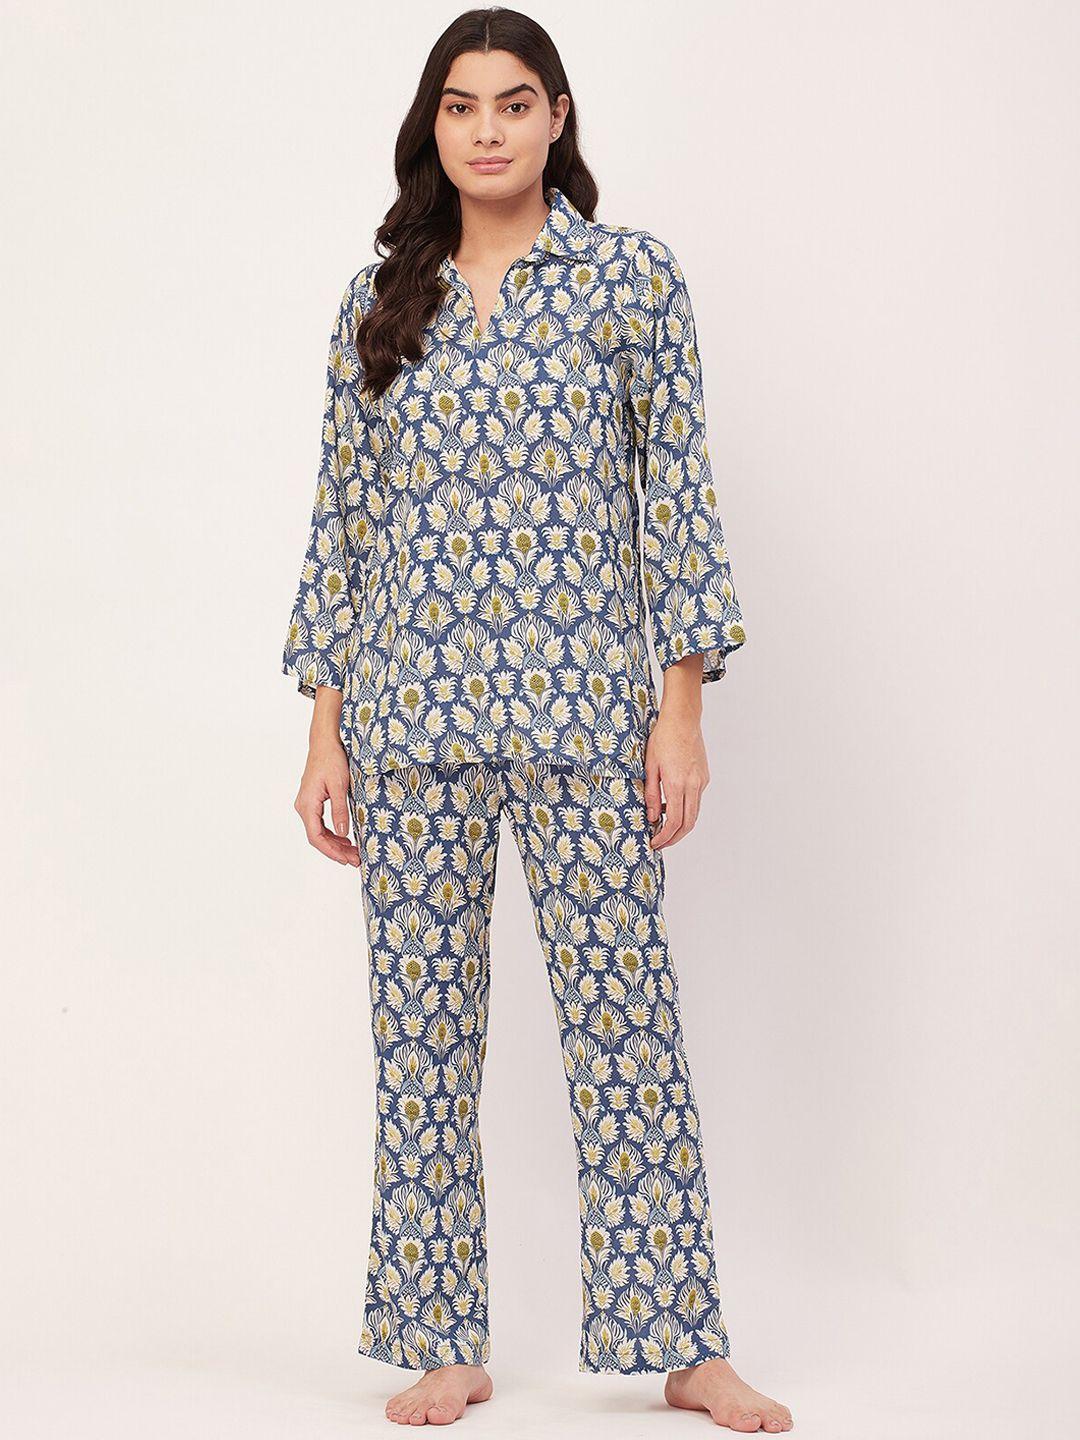 moomaya floral printed shirt collar top & pyjama